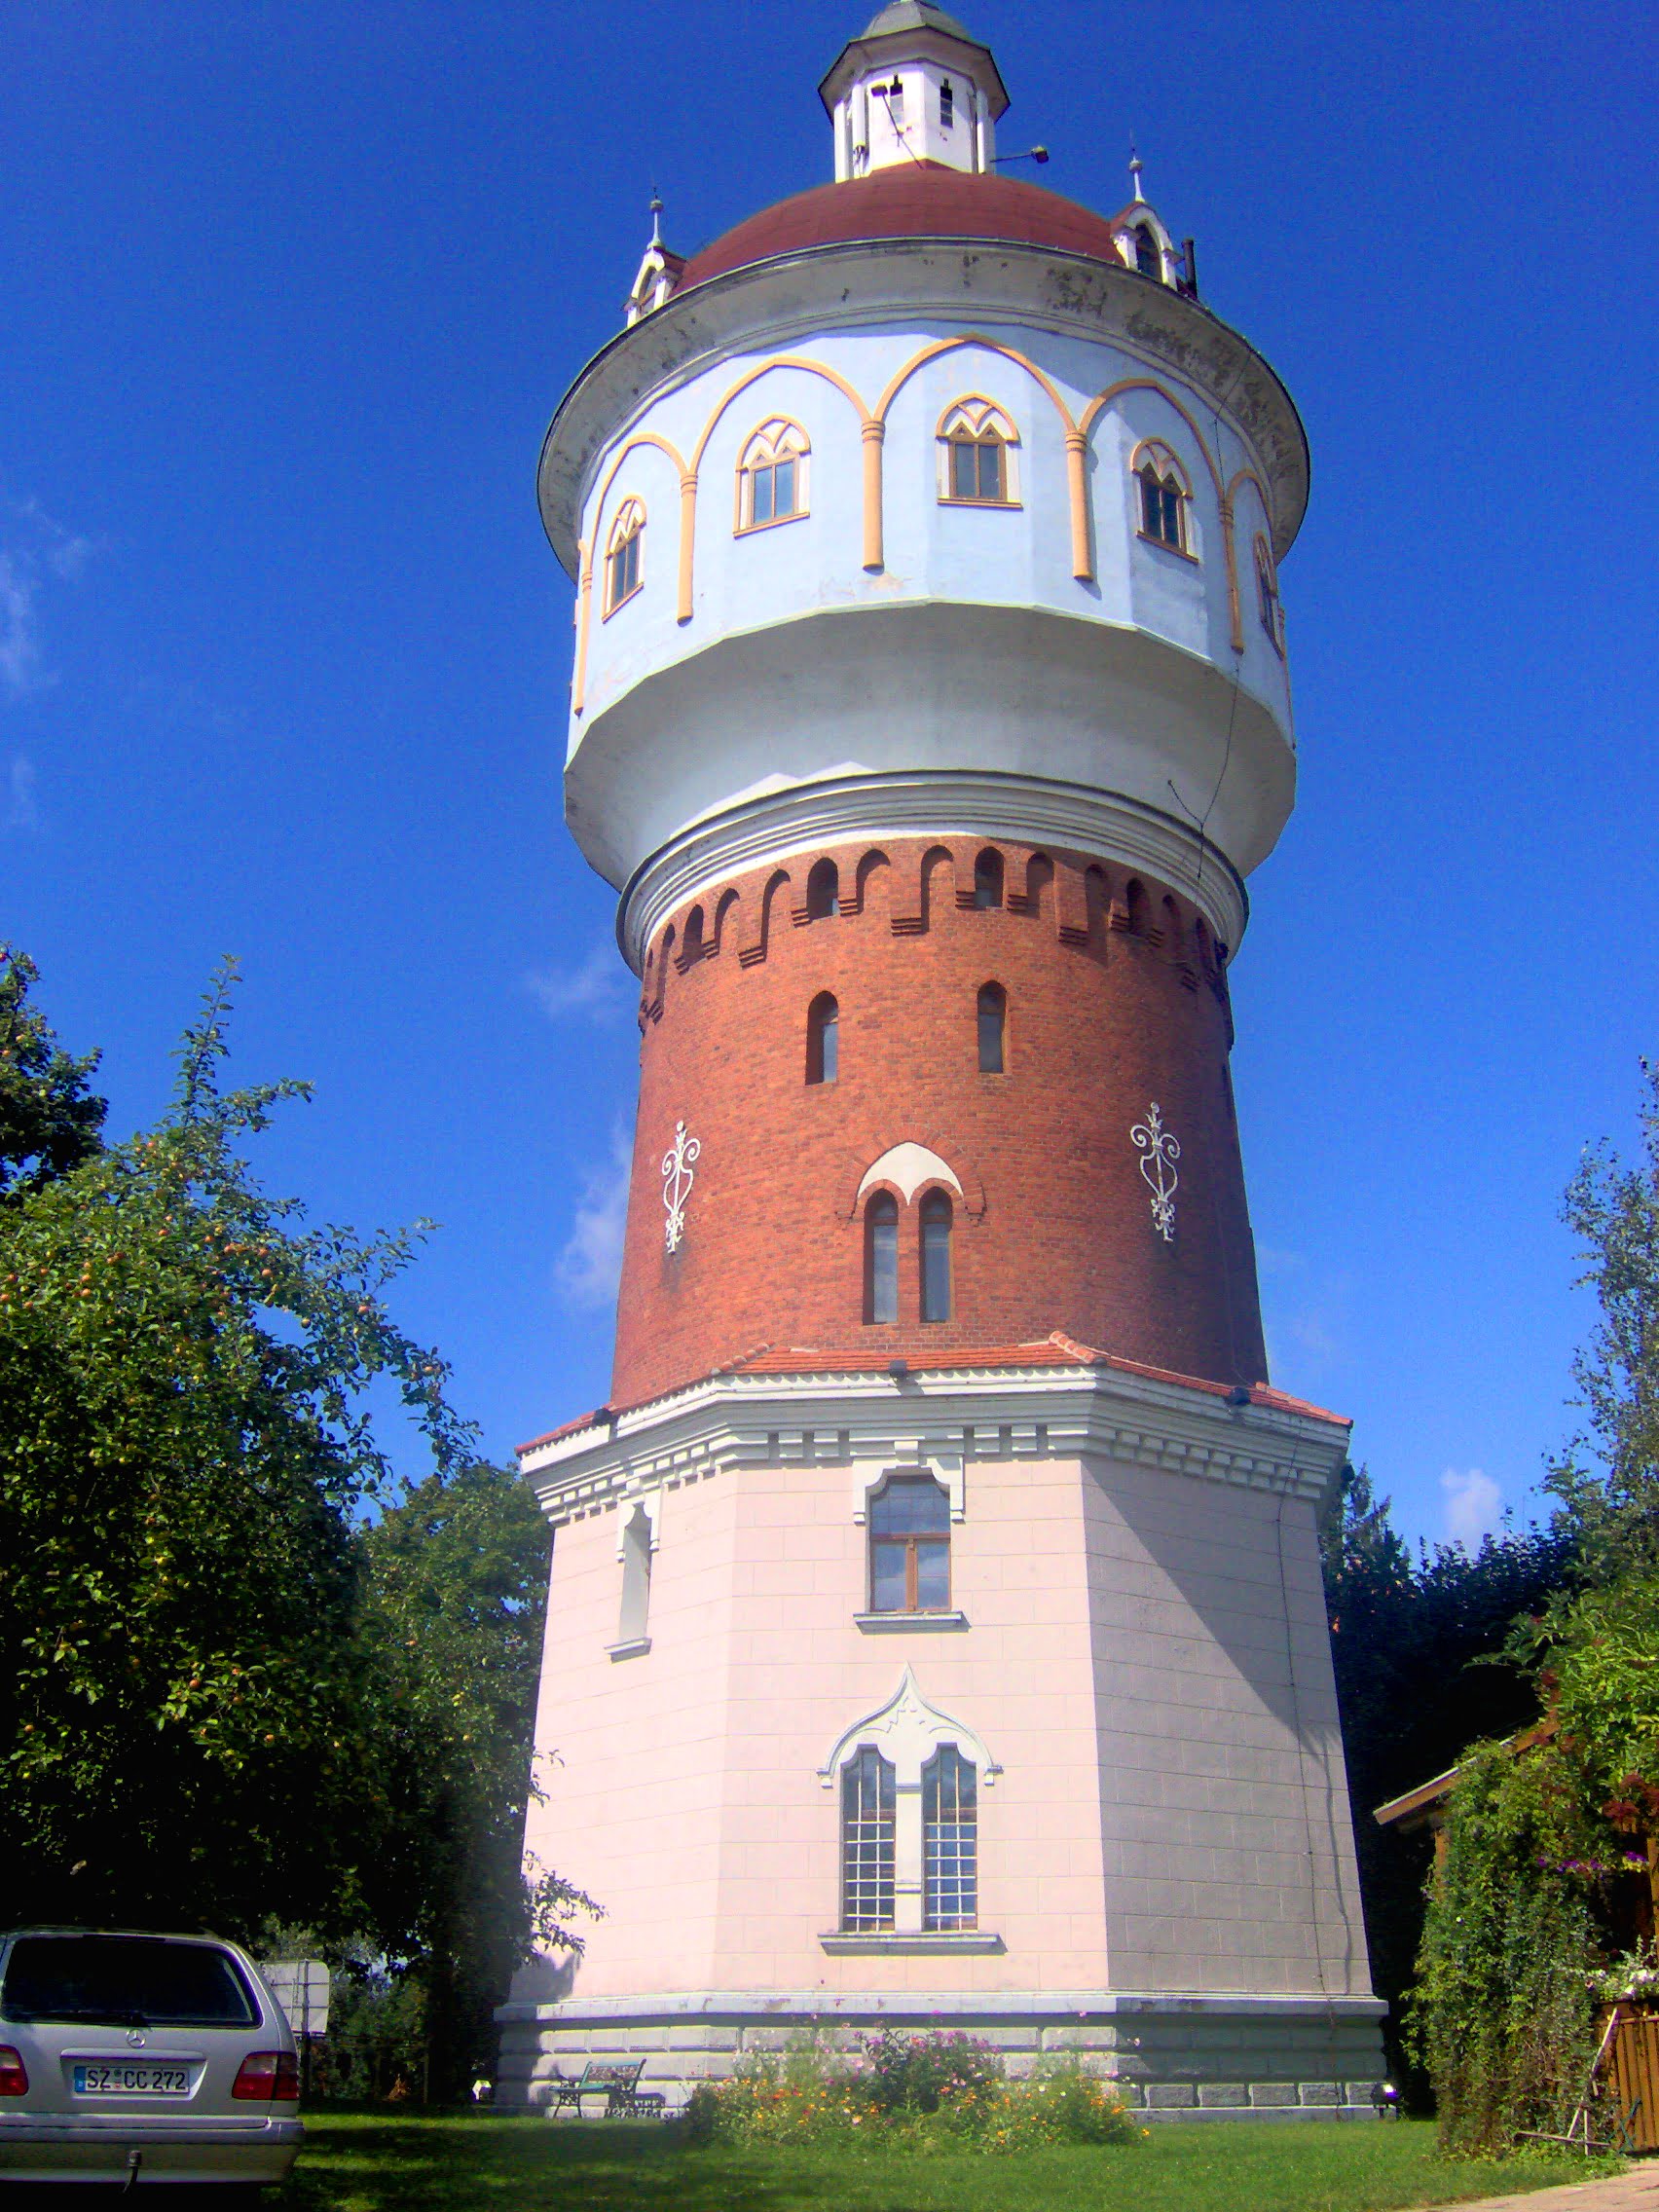 Wieża Ciśnień siedziba SMNN Mazury w Ełku